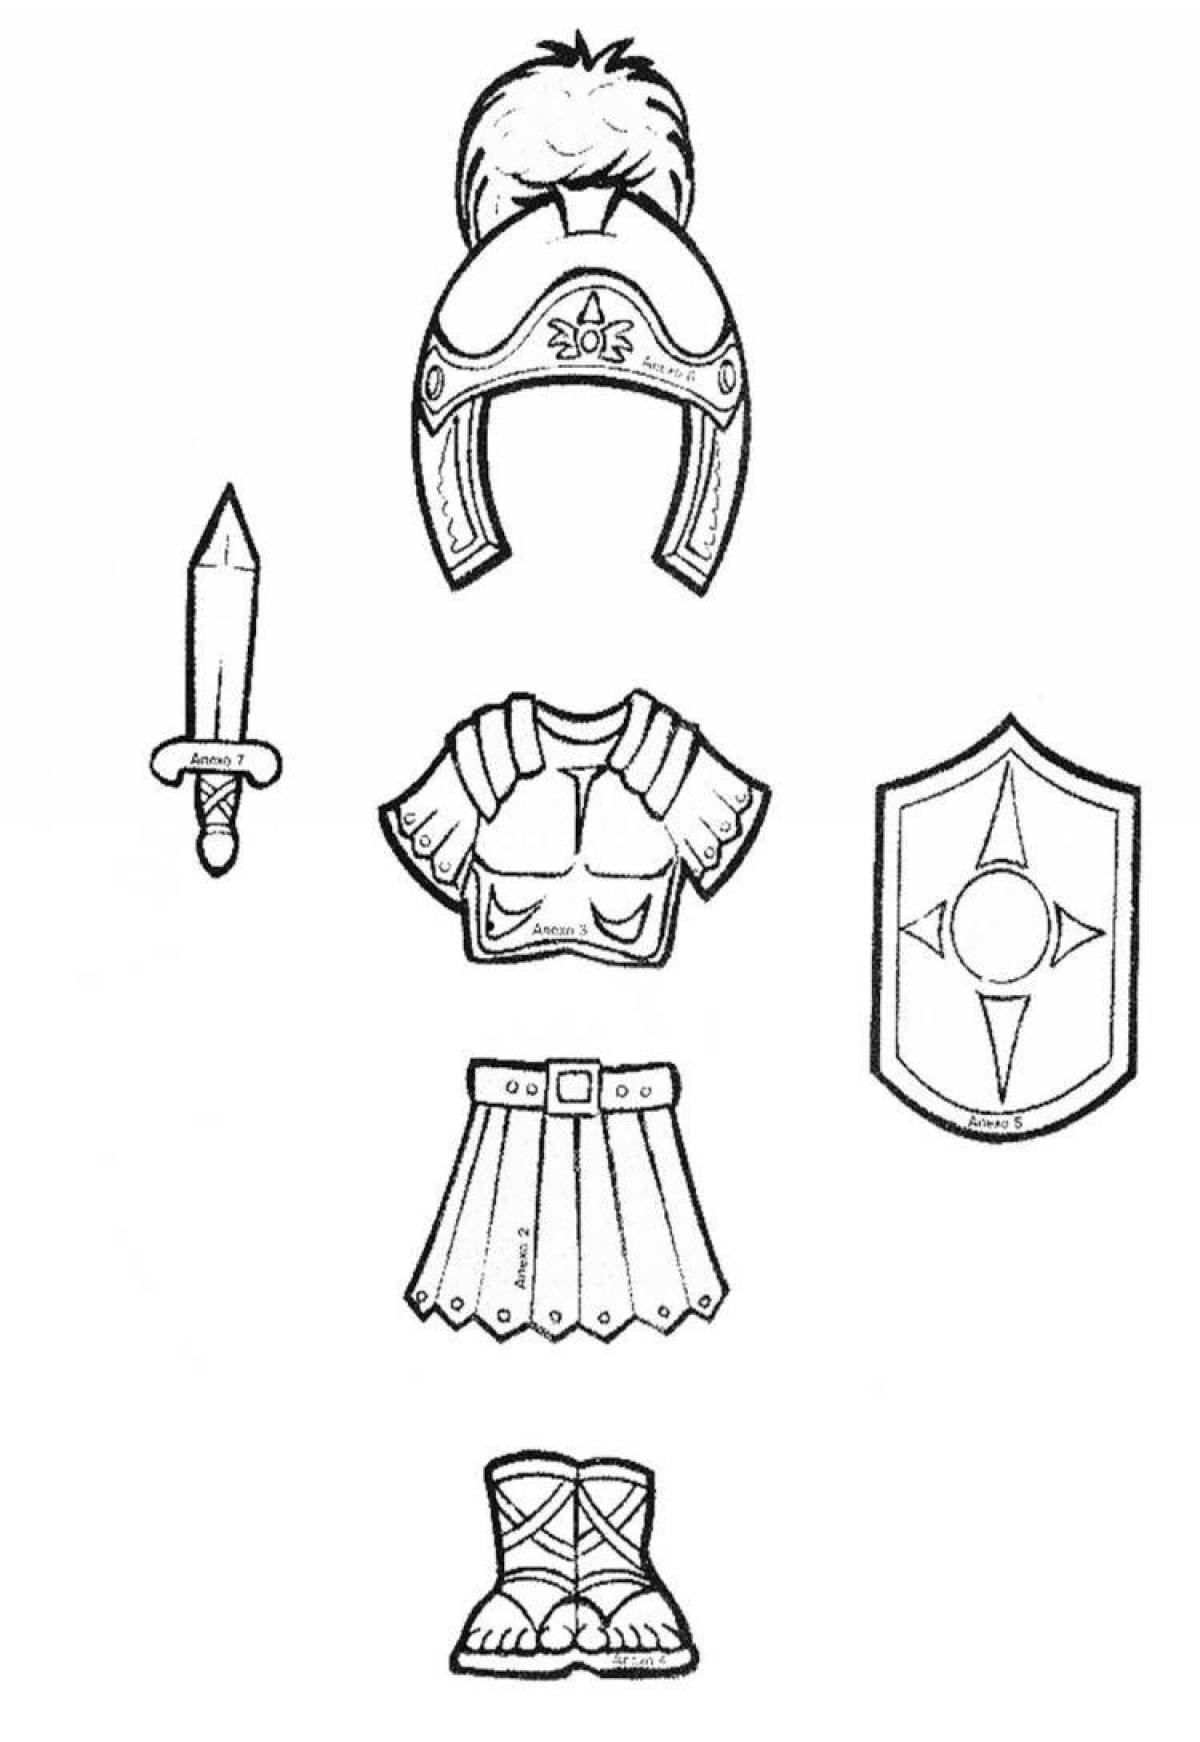 Fun armor coloring